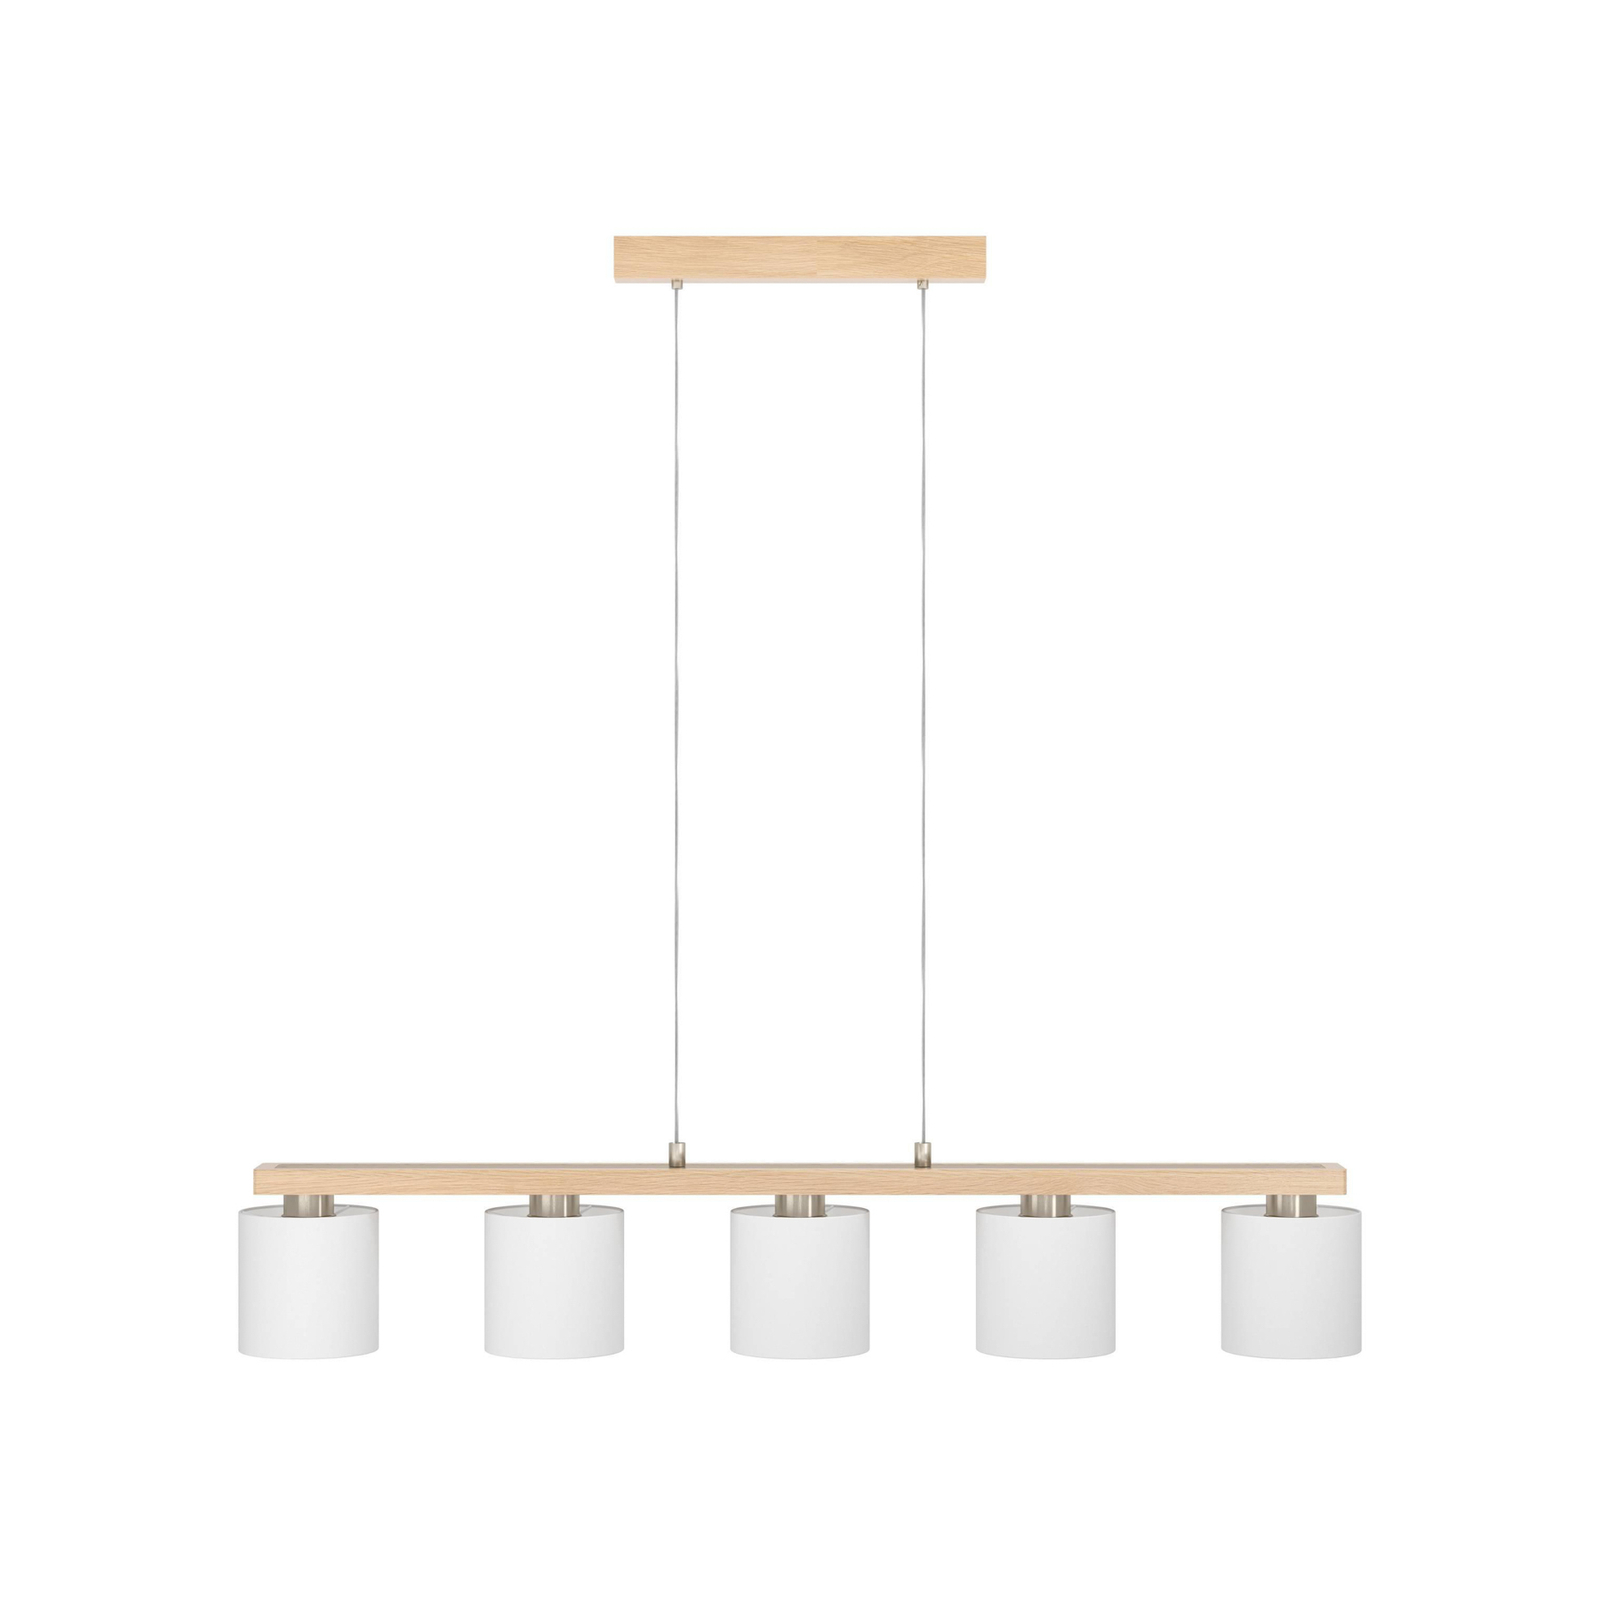 Castralvo hanging light, length 115 cm, wood/white, 5-bulb, fabric